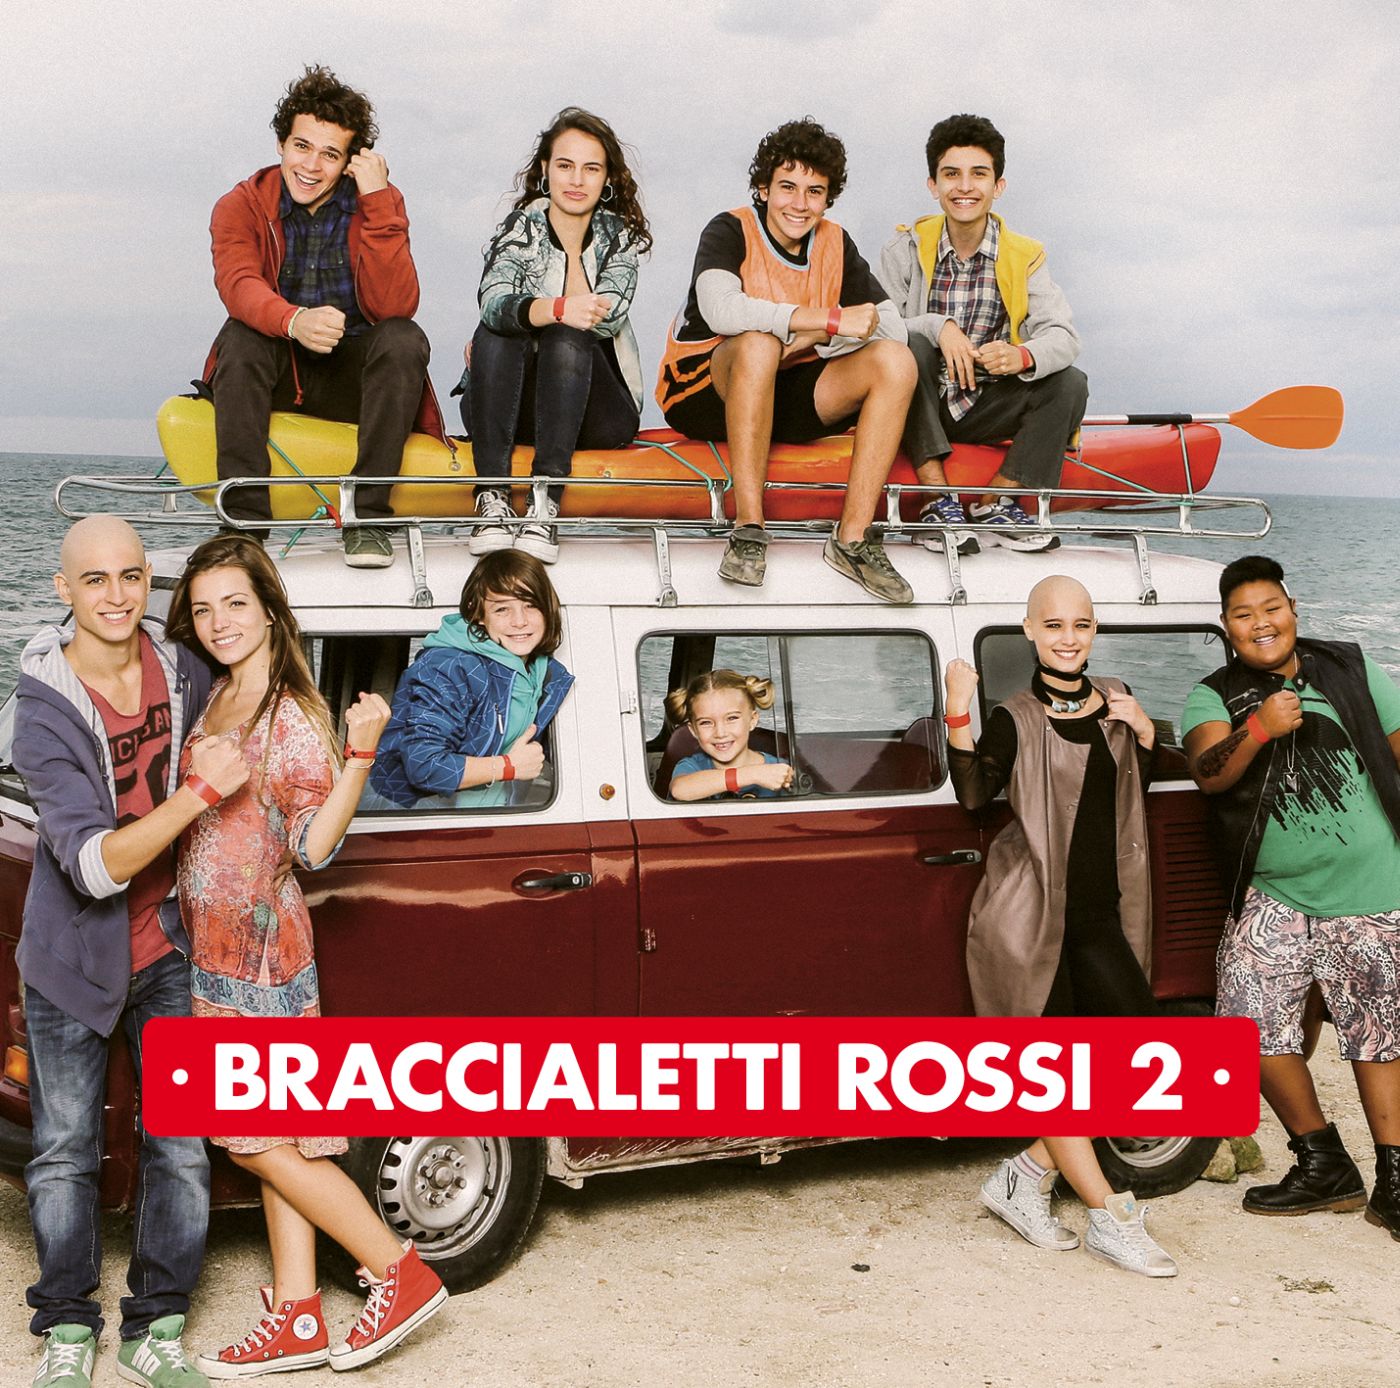  Oggi esce Braccialetti Rossi 2, il disco della colonna sonora della seconda stagione